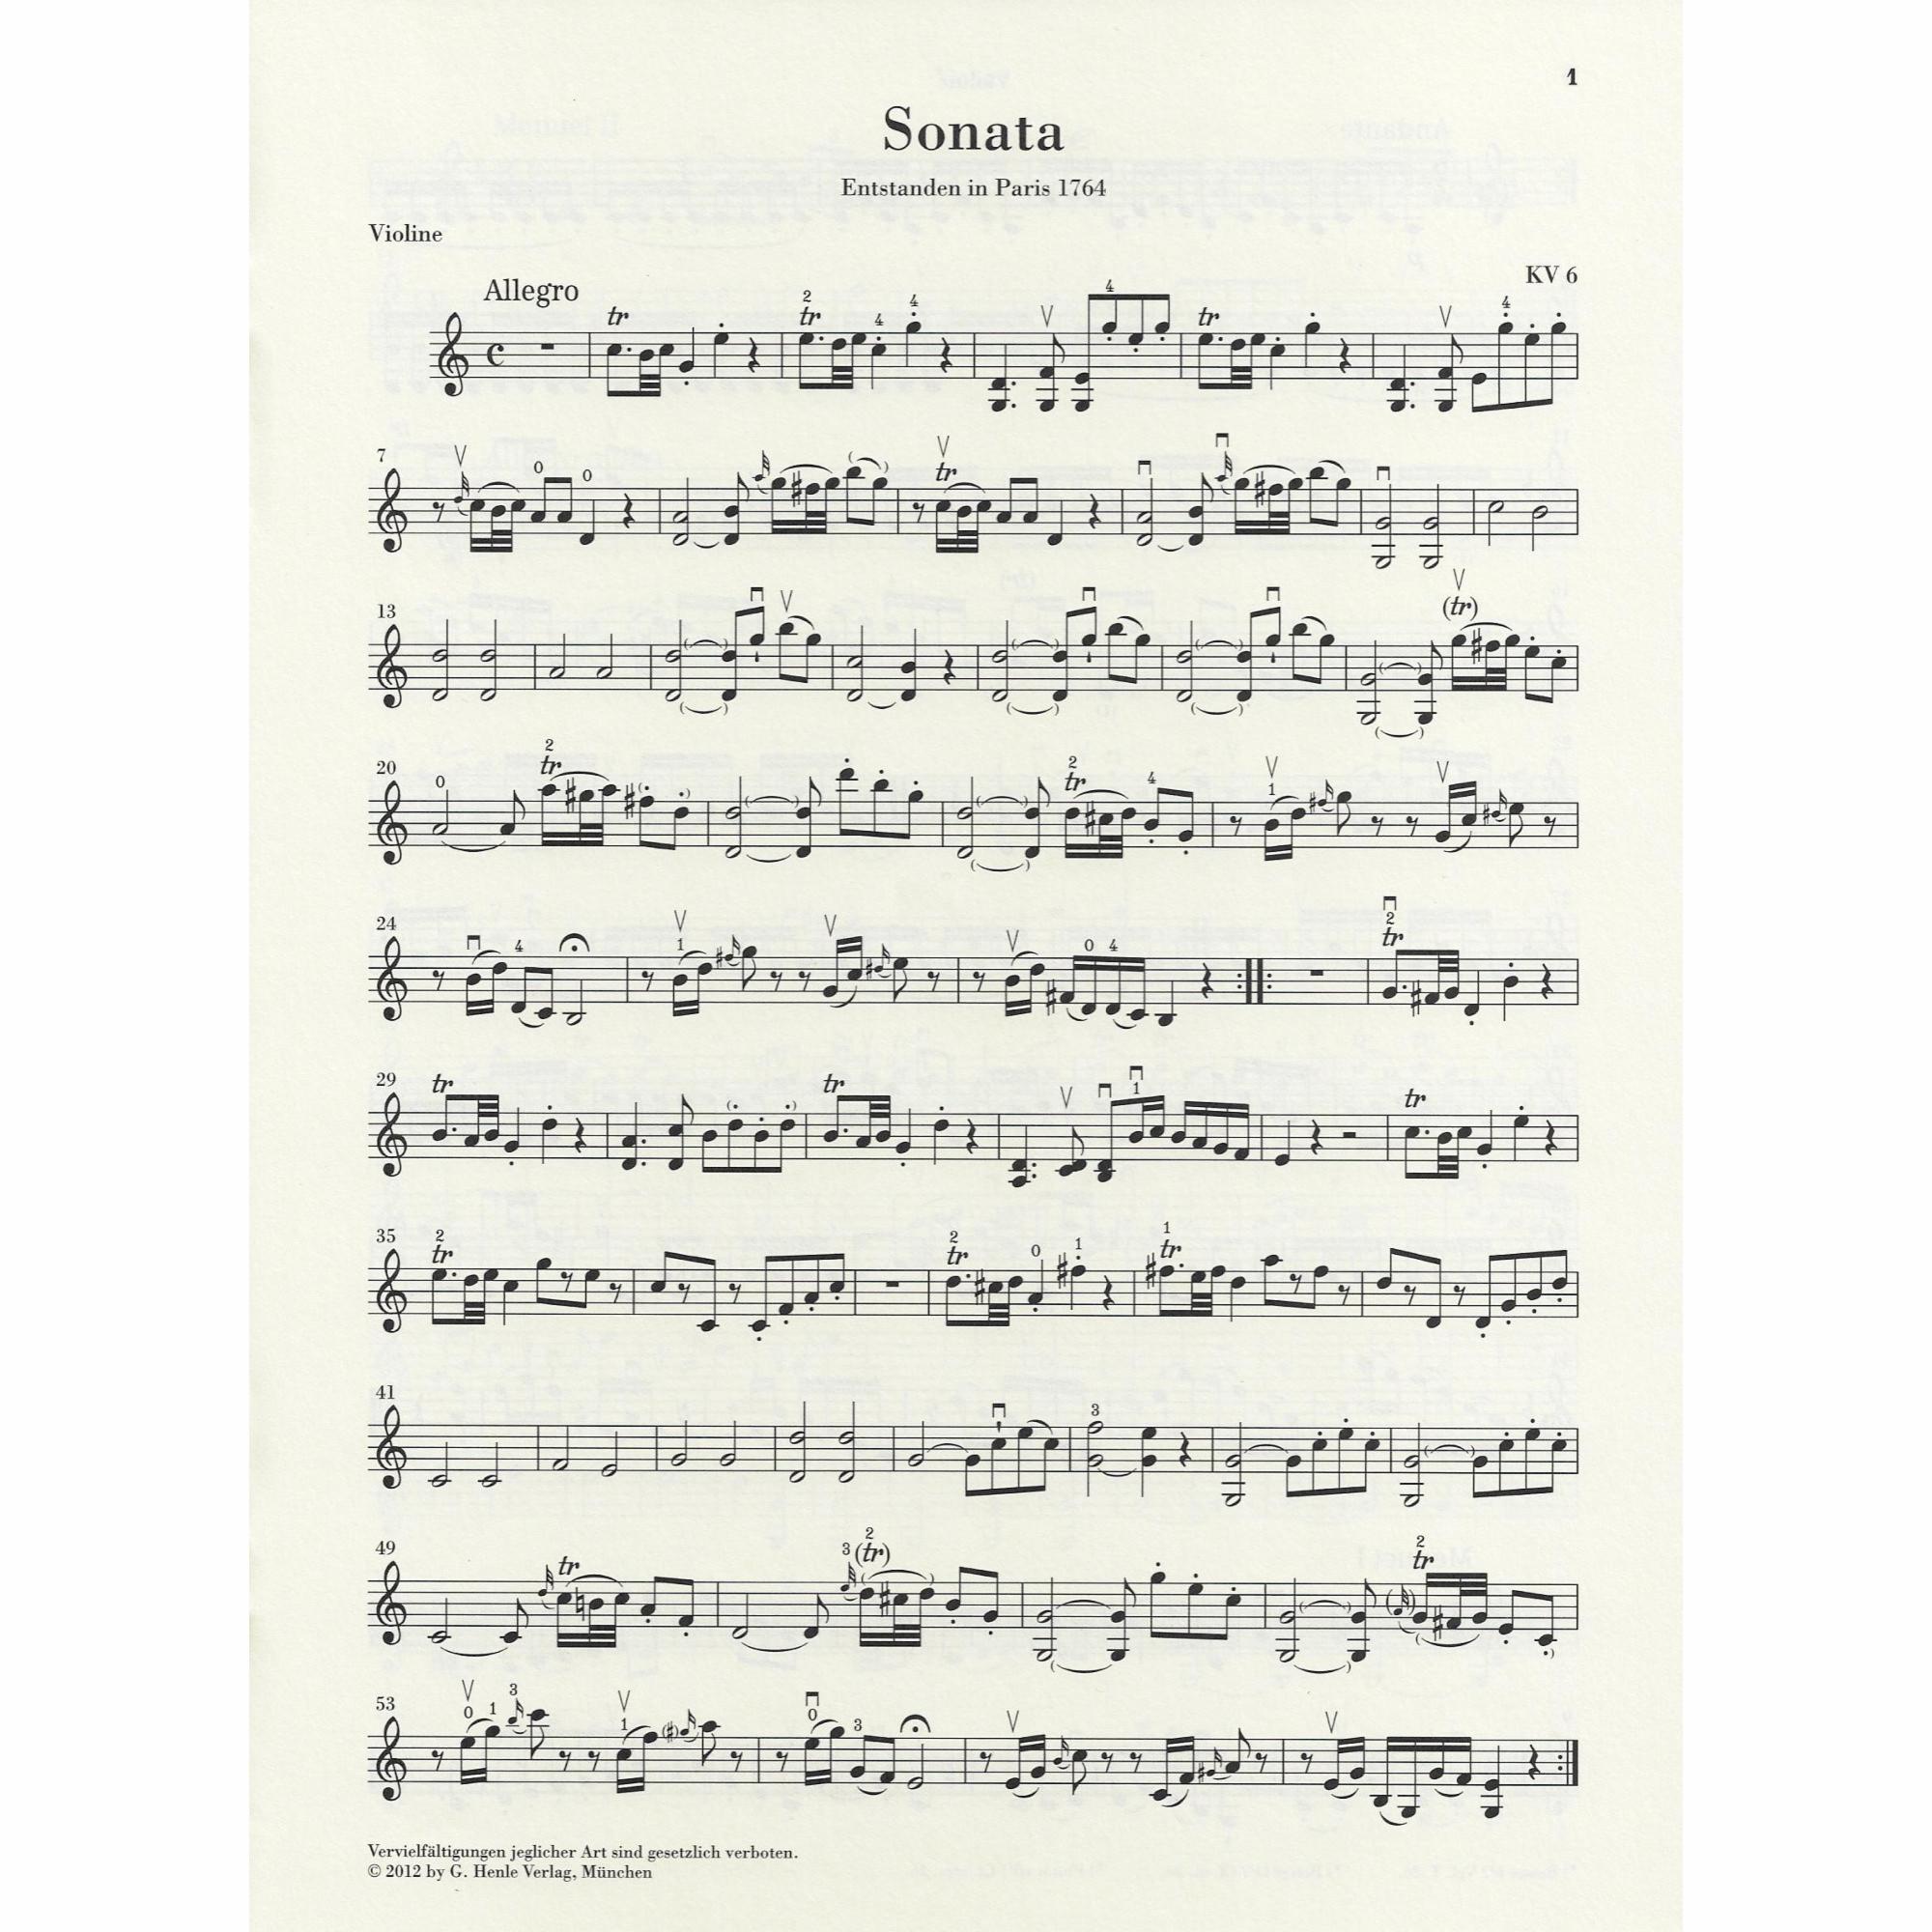 Sample: Vol. I, Marked Violin Part